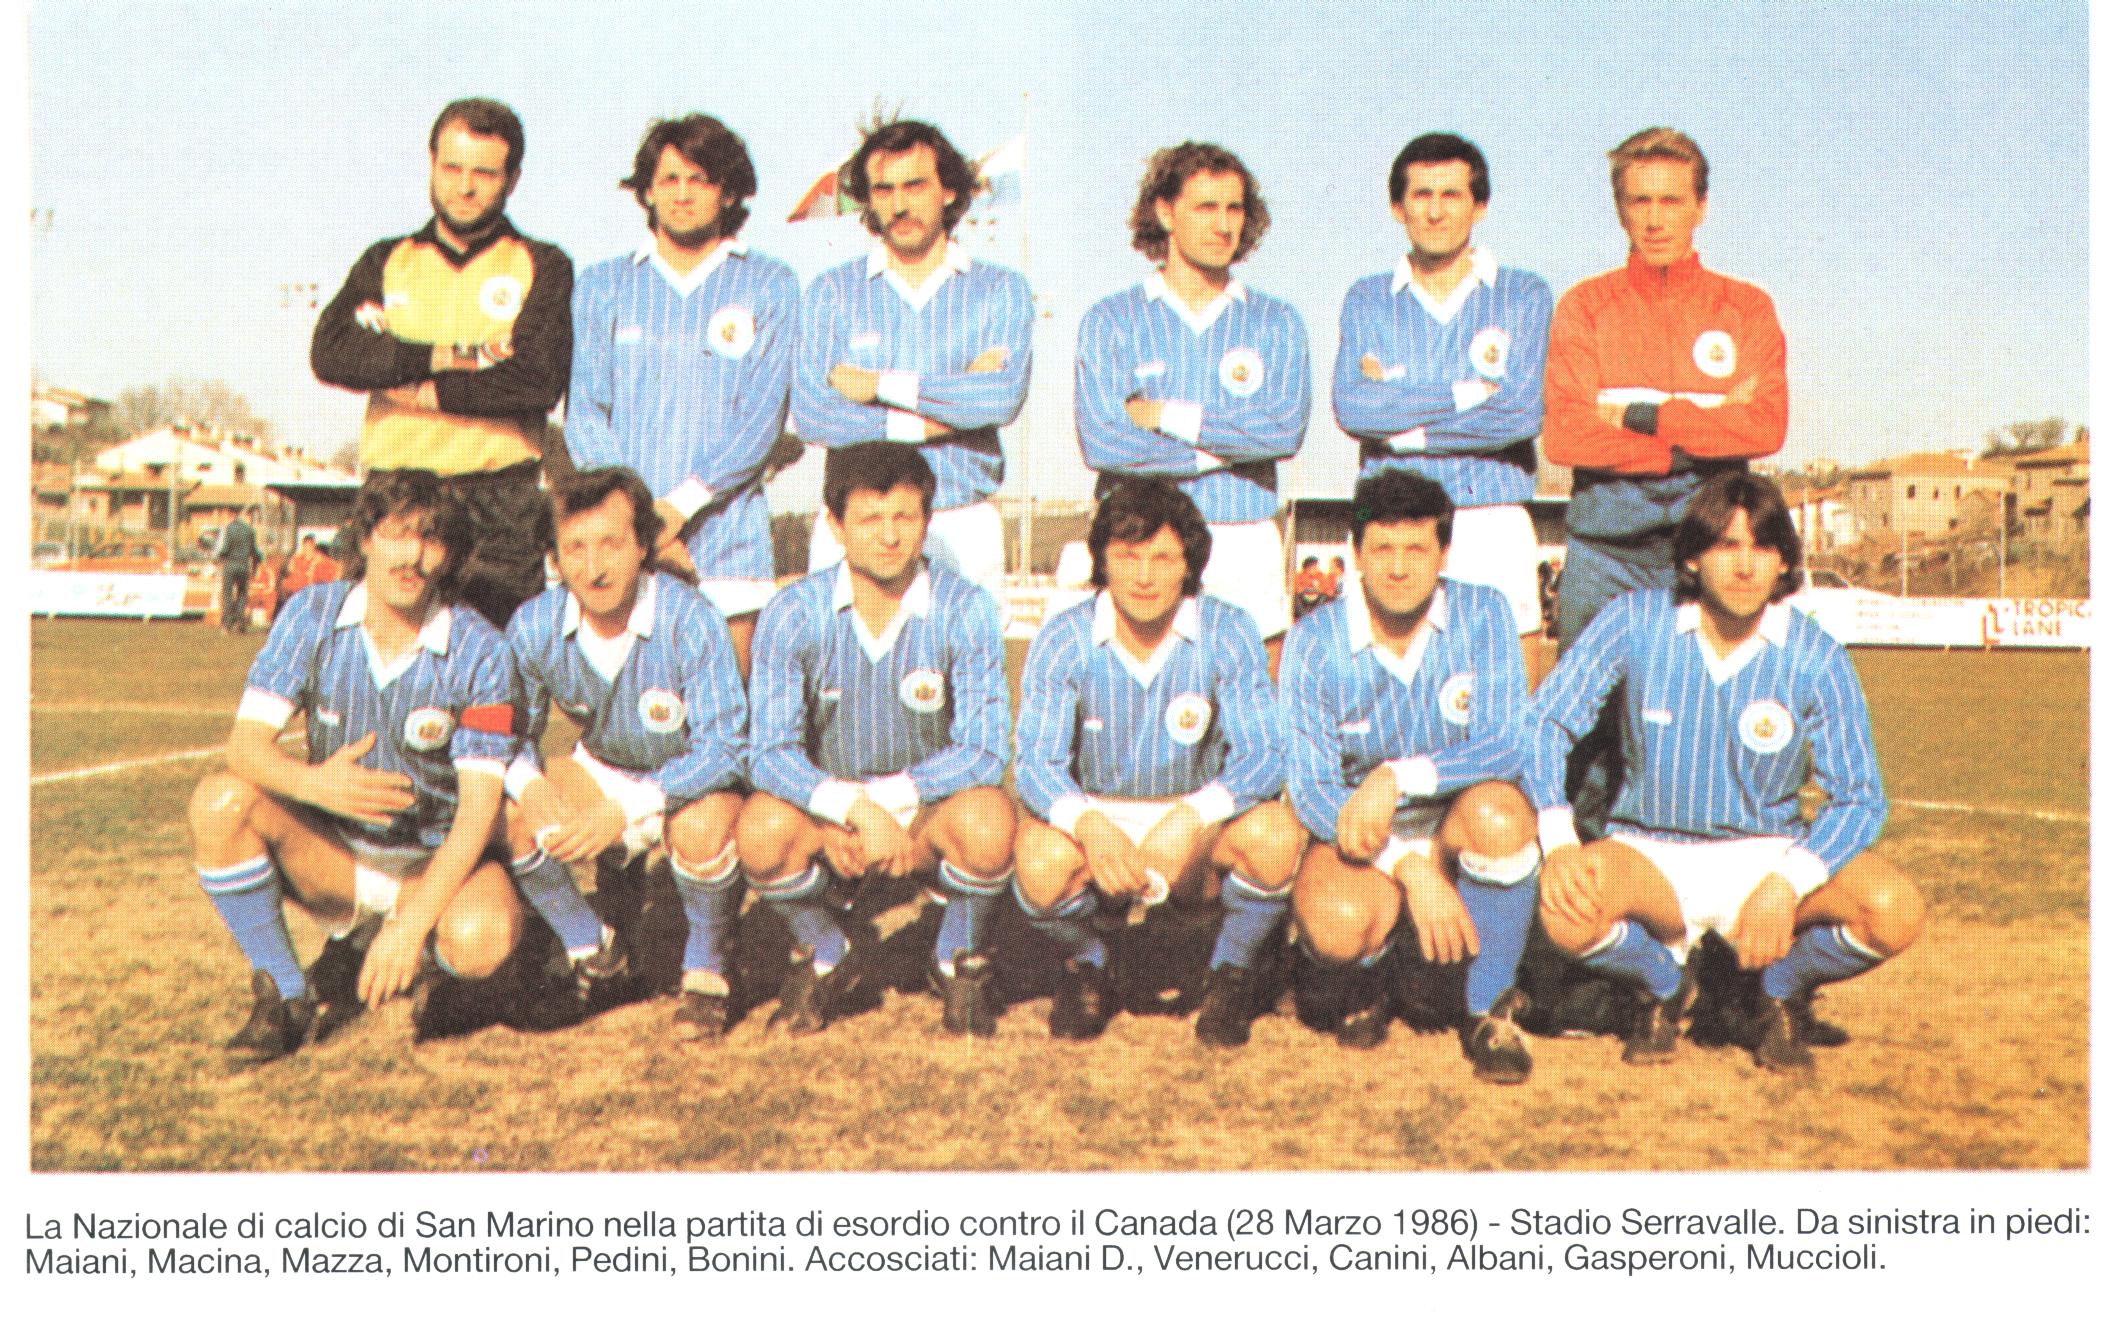 Il San Marino è qualcosa in meno rispetto a una Nazionale, ma qualcosa in più rispetto a un club normale